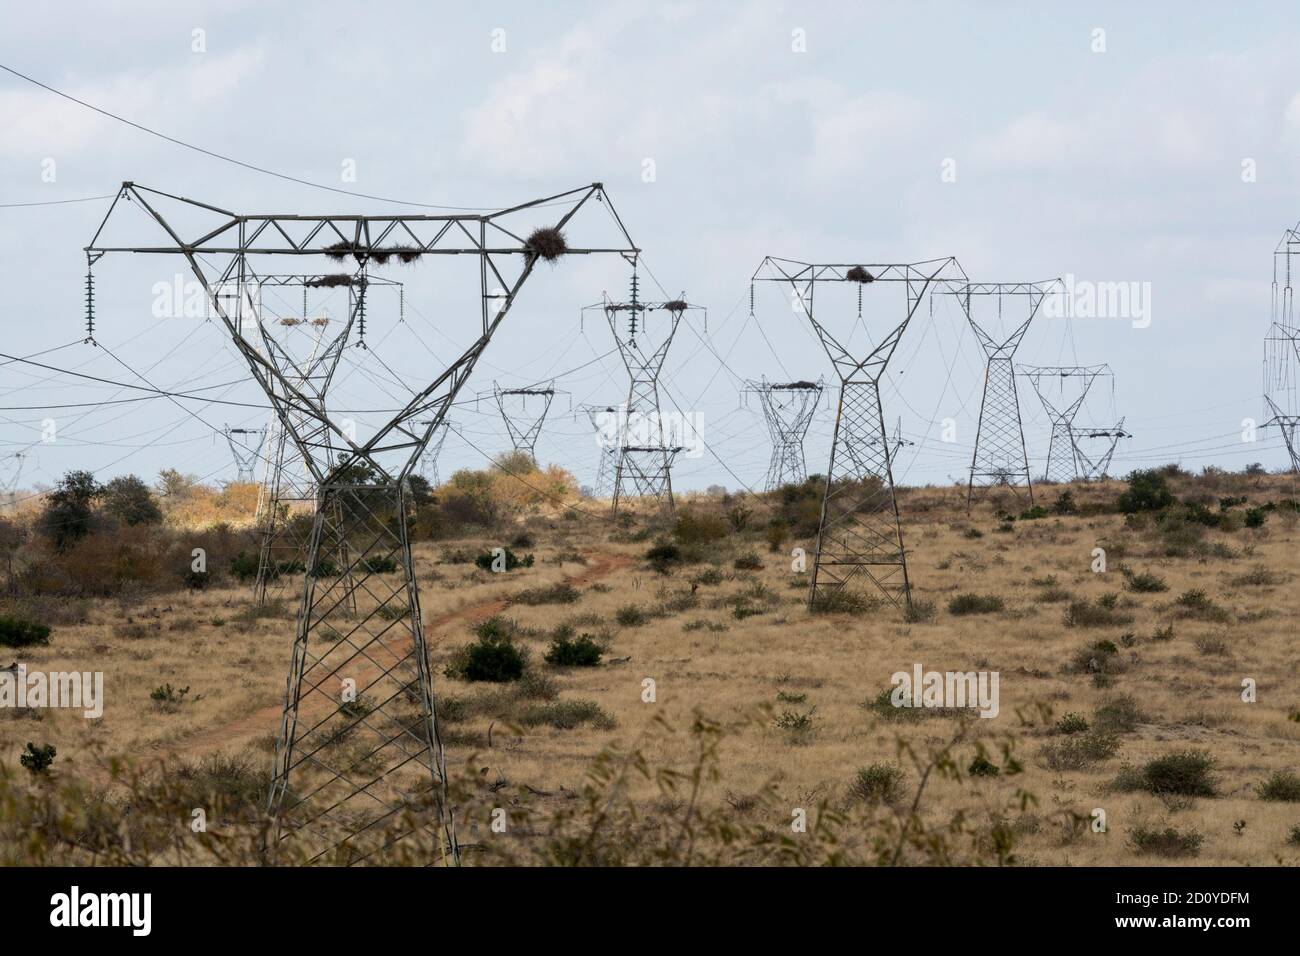 Stromleitungen - Reihen von Pylonen/Masten, die Hochspannungsleitungen über offene Buschveld in Südafrika transportieren. Braunes Veld und blaues sk Stockfoto